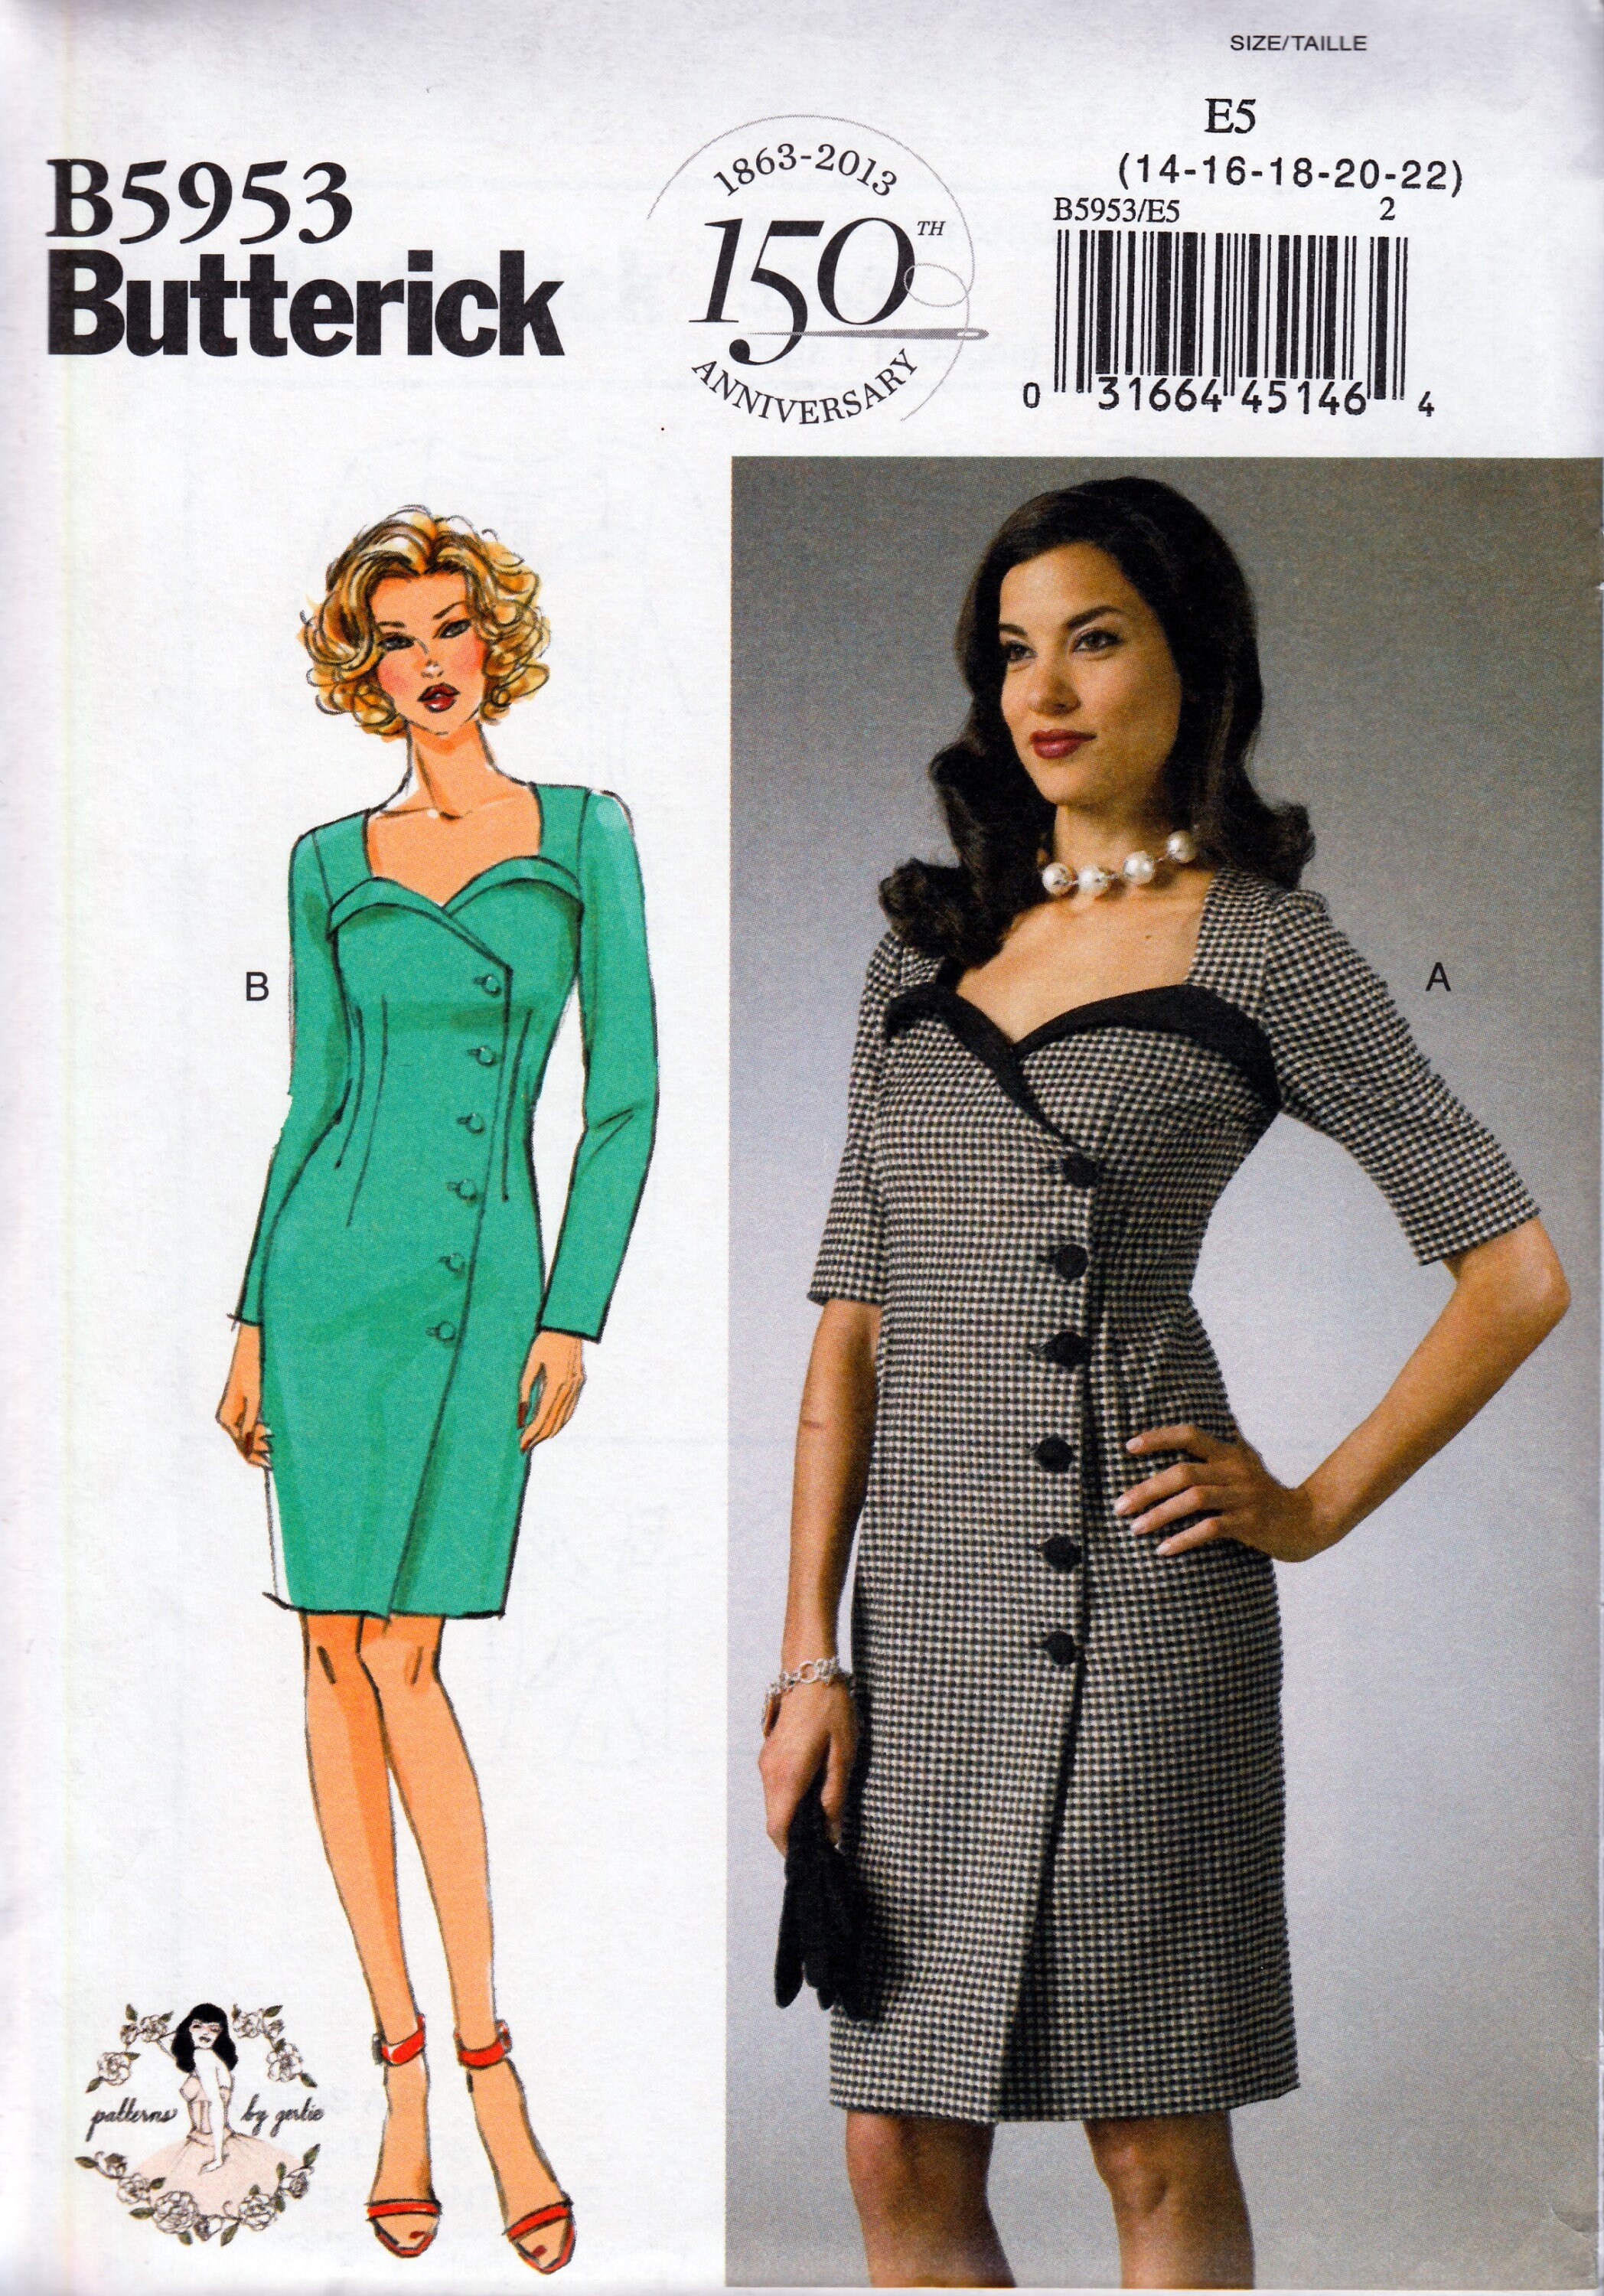 Butterick Modelli B5030 Dimensione FF 16-18-20-22 Misses Dress/Cinghia e Sash Bianco Confezione da 1 